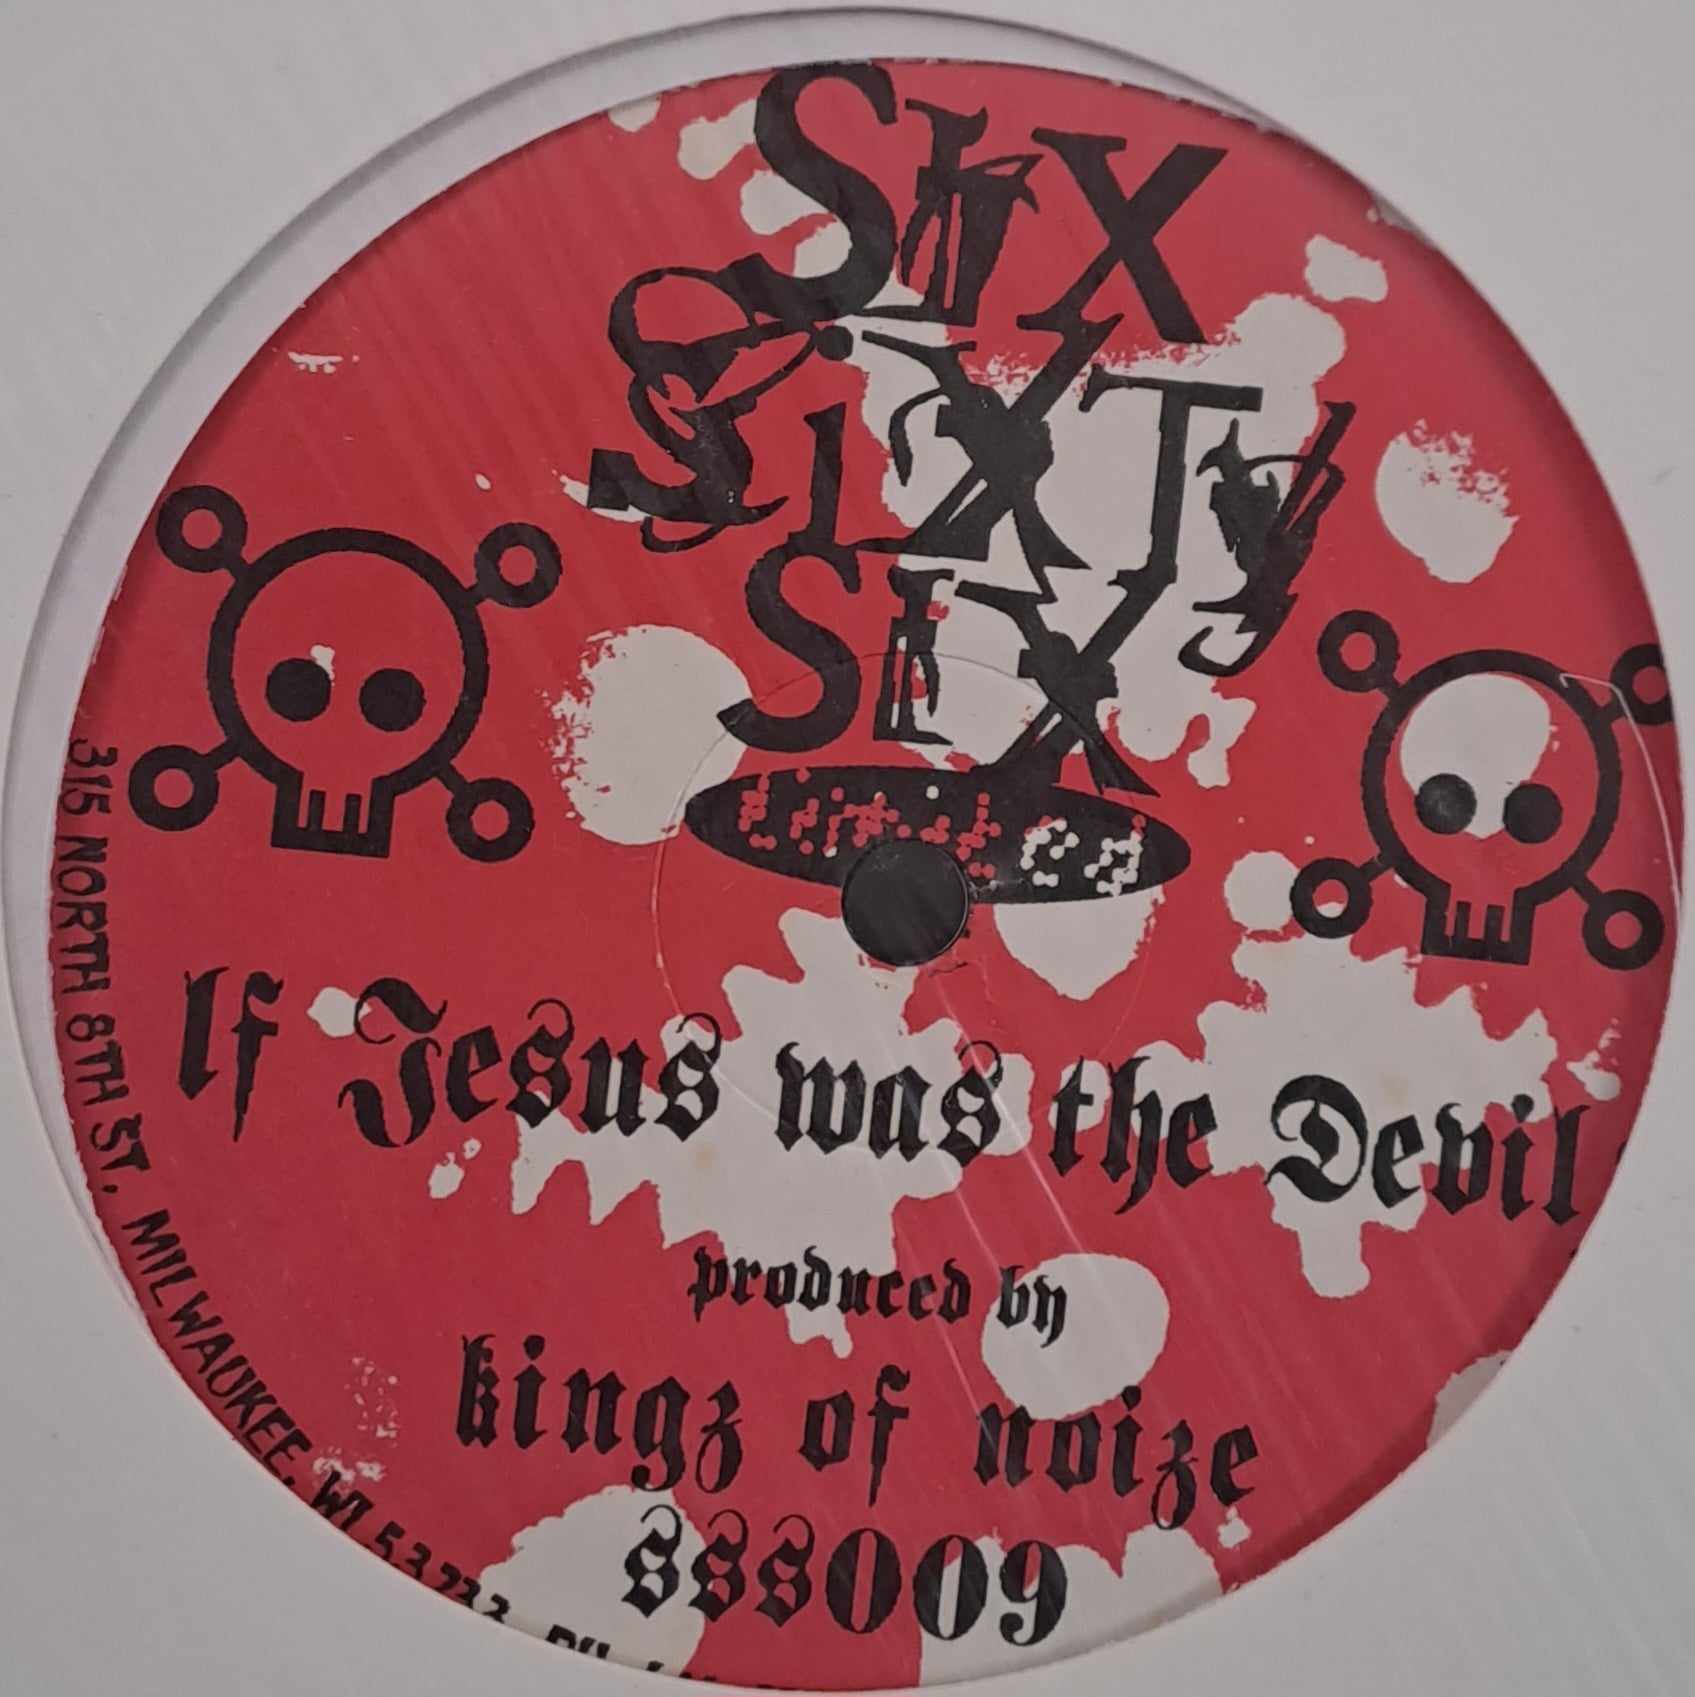 Six Sixty Six Limited 009 (une seule copie) - vinyle Noise